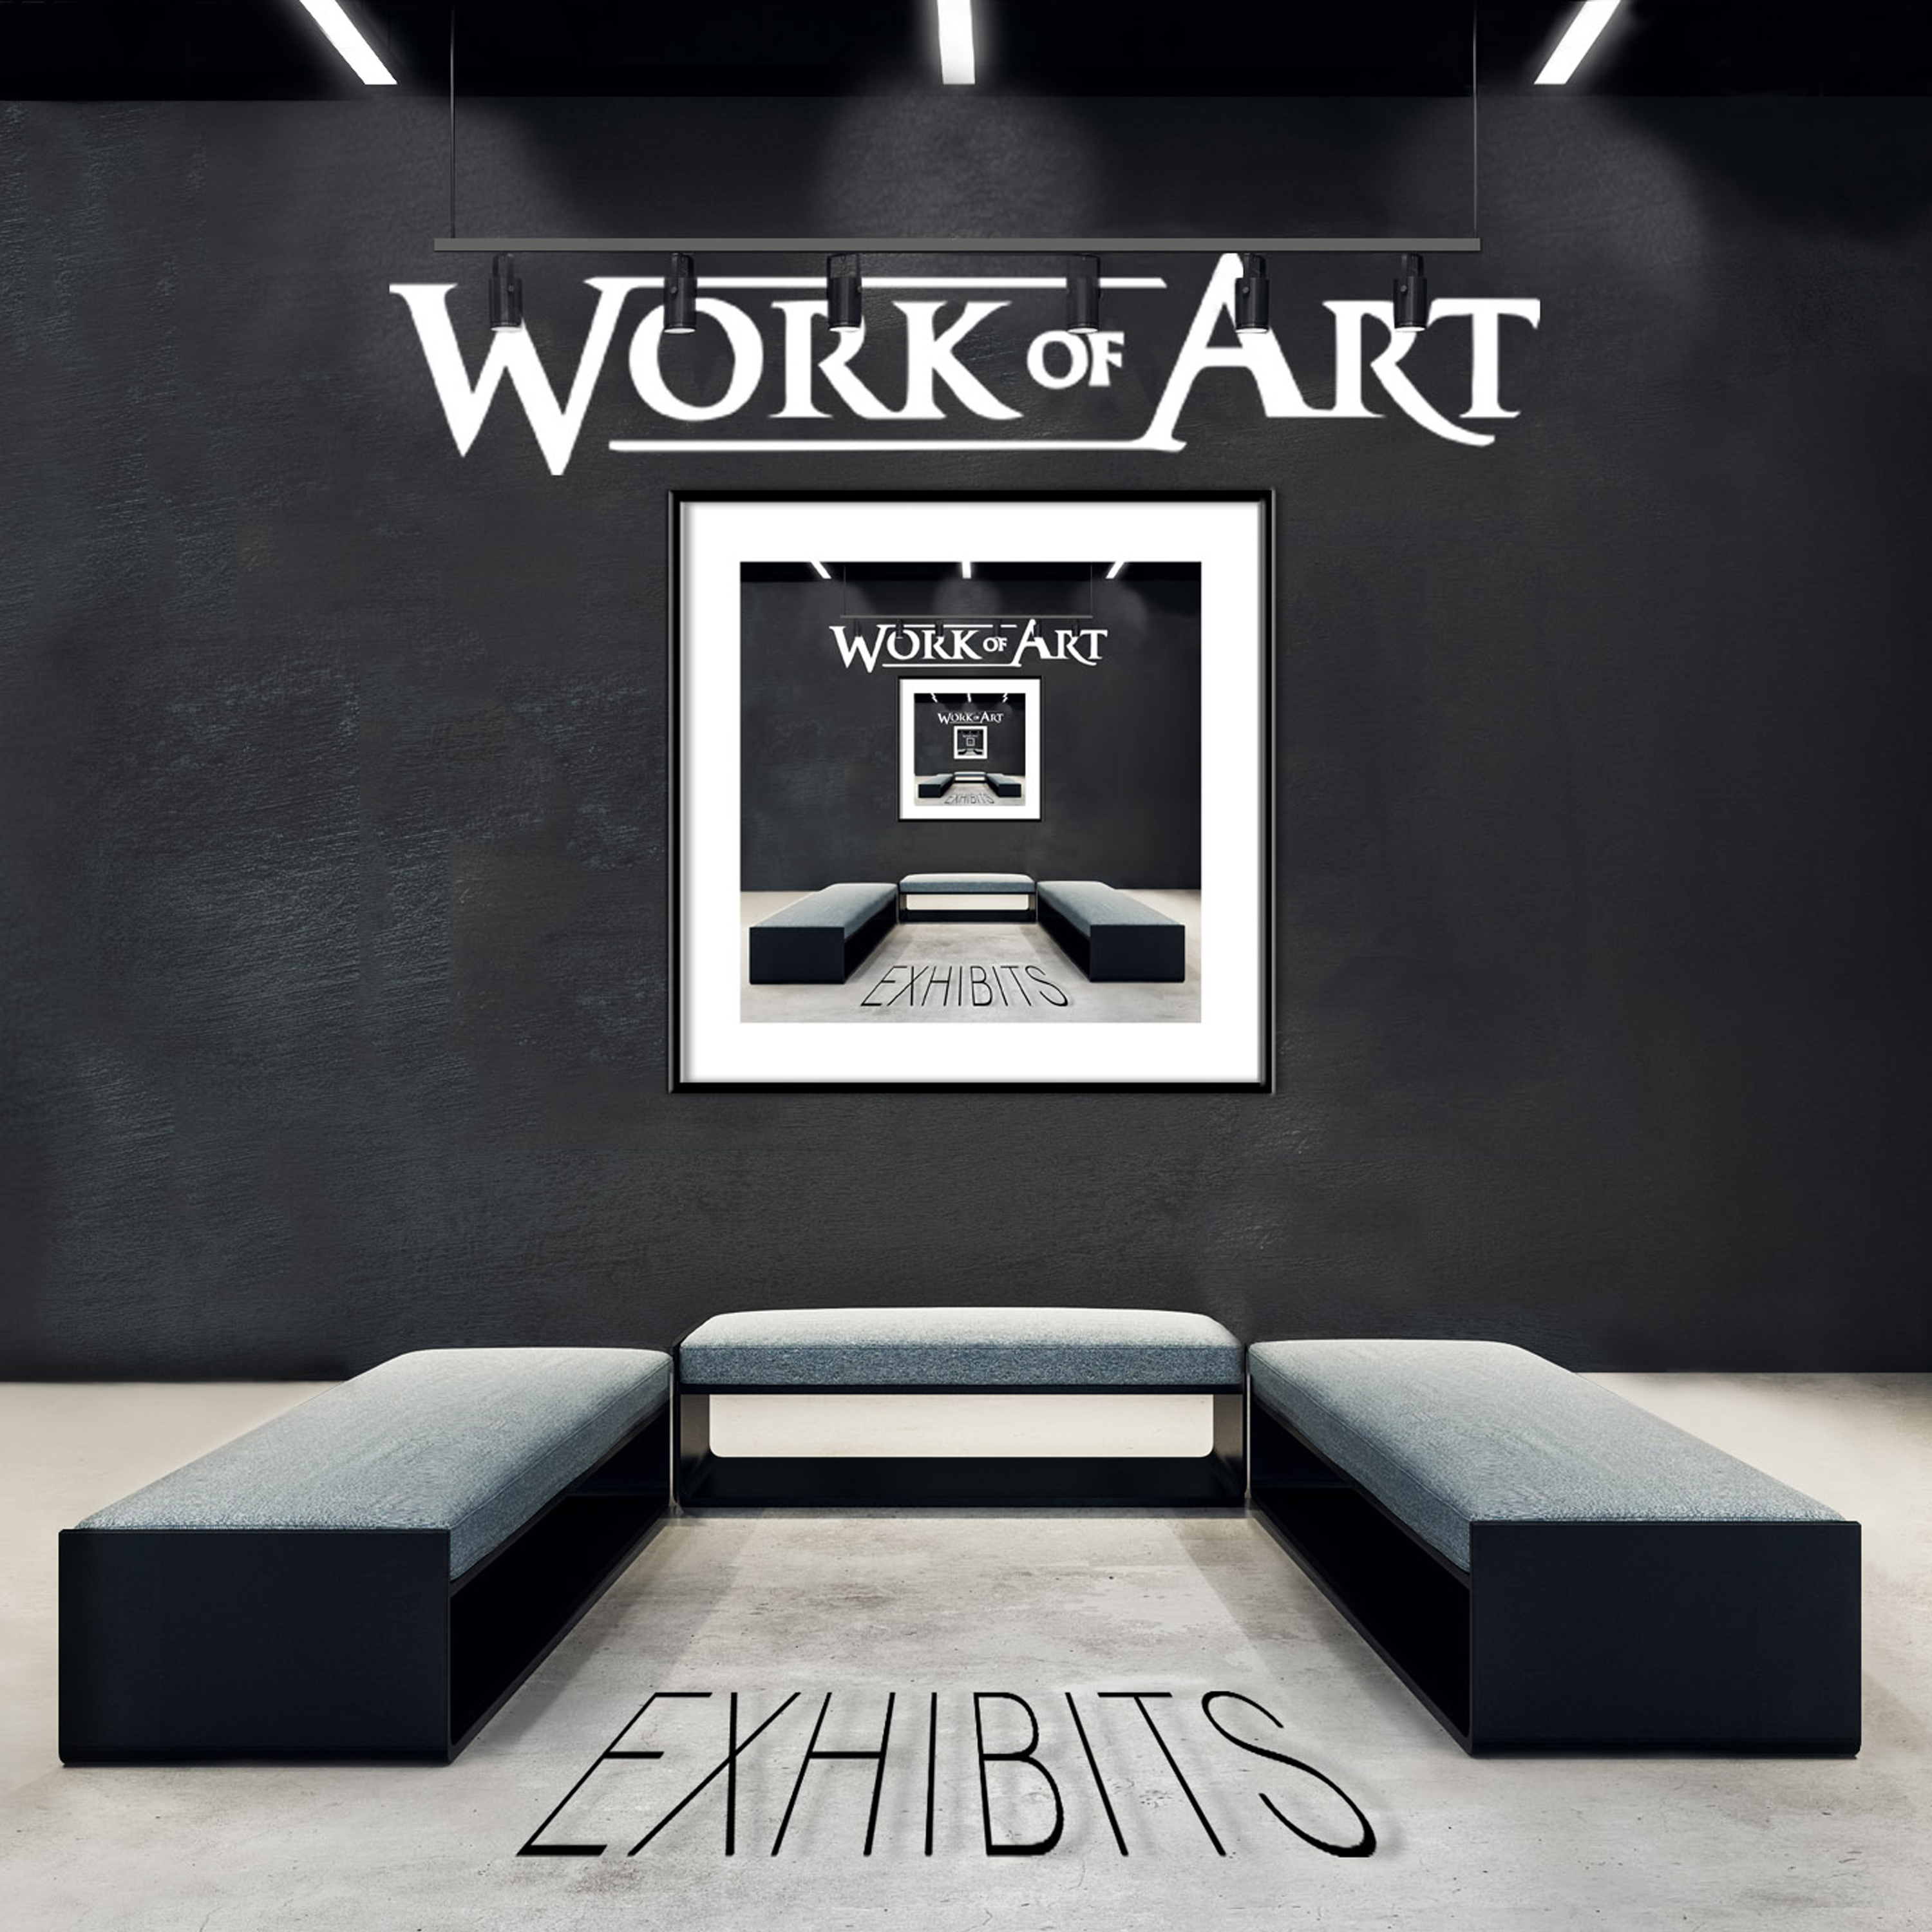 Work Of Art - Exhibits - CD